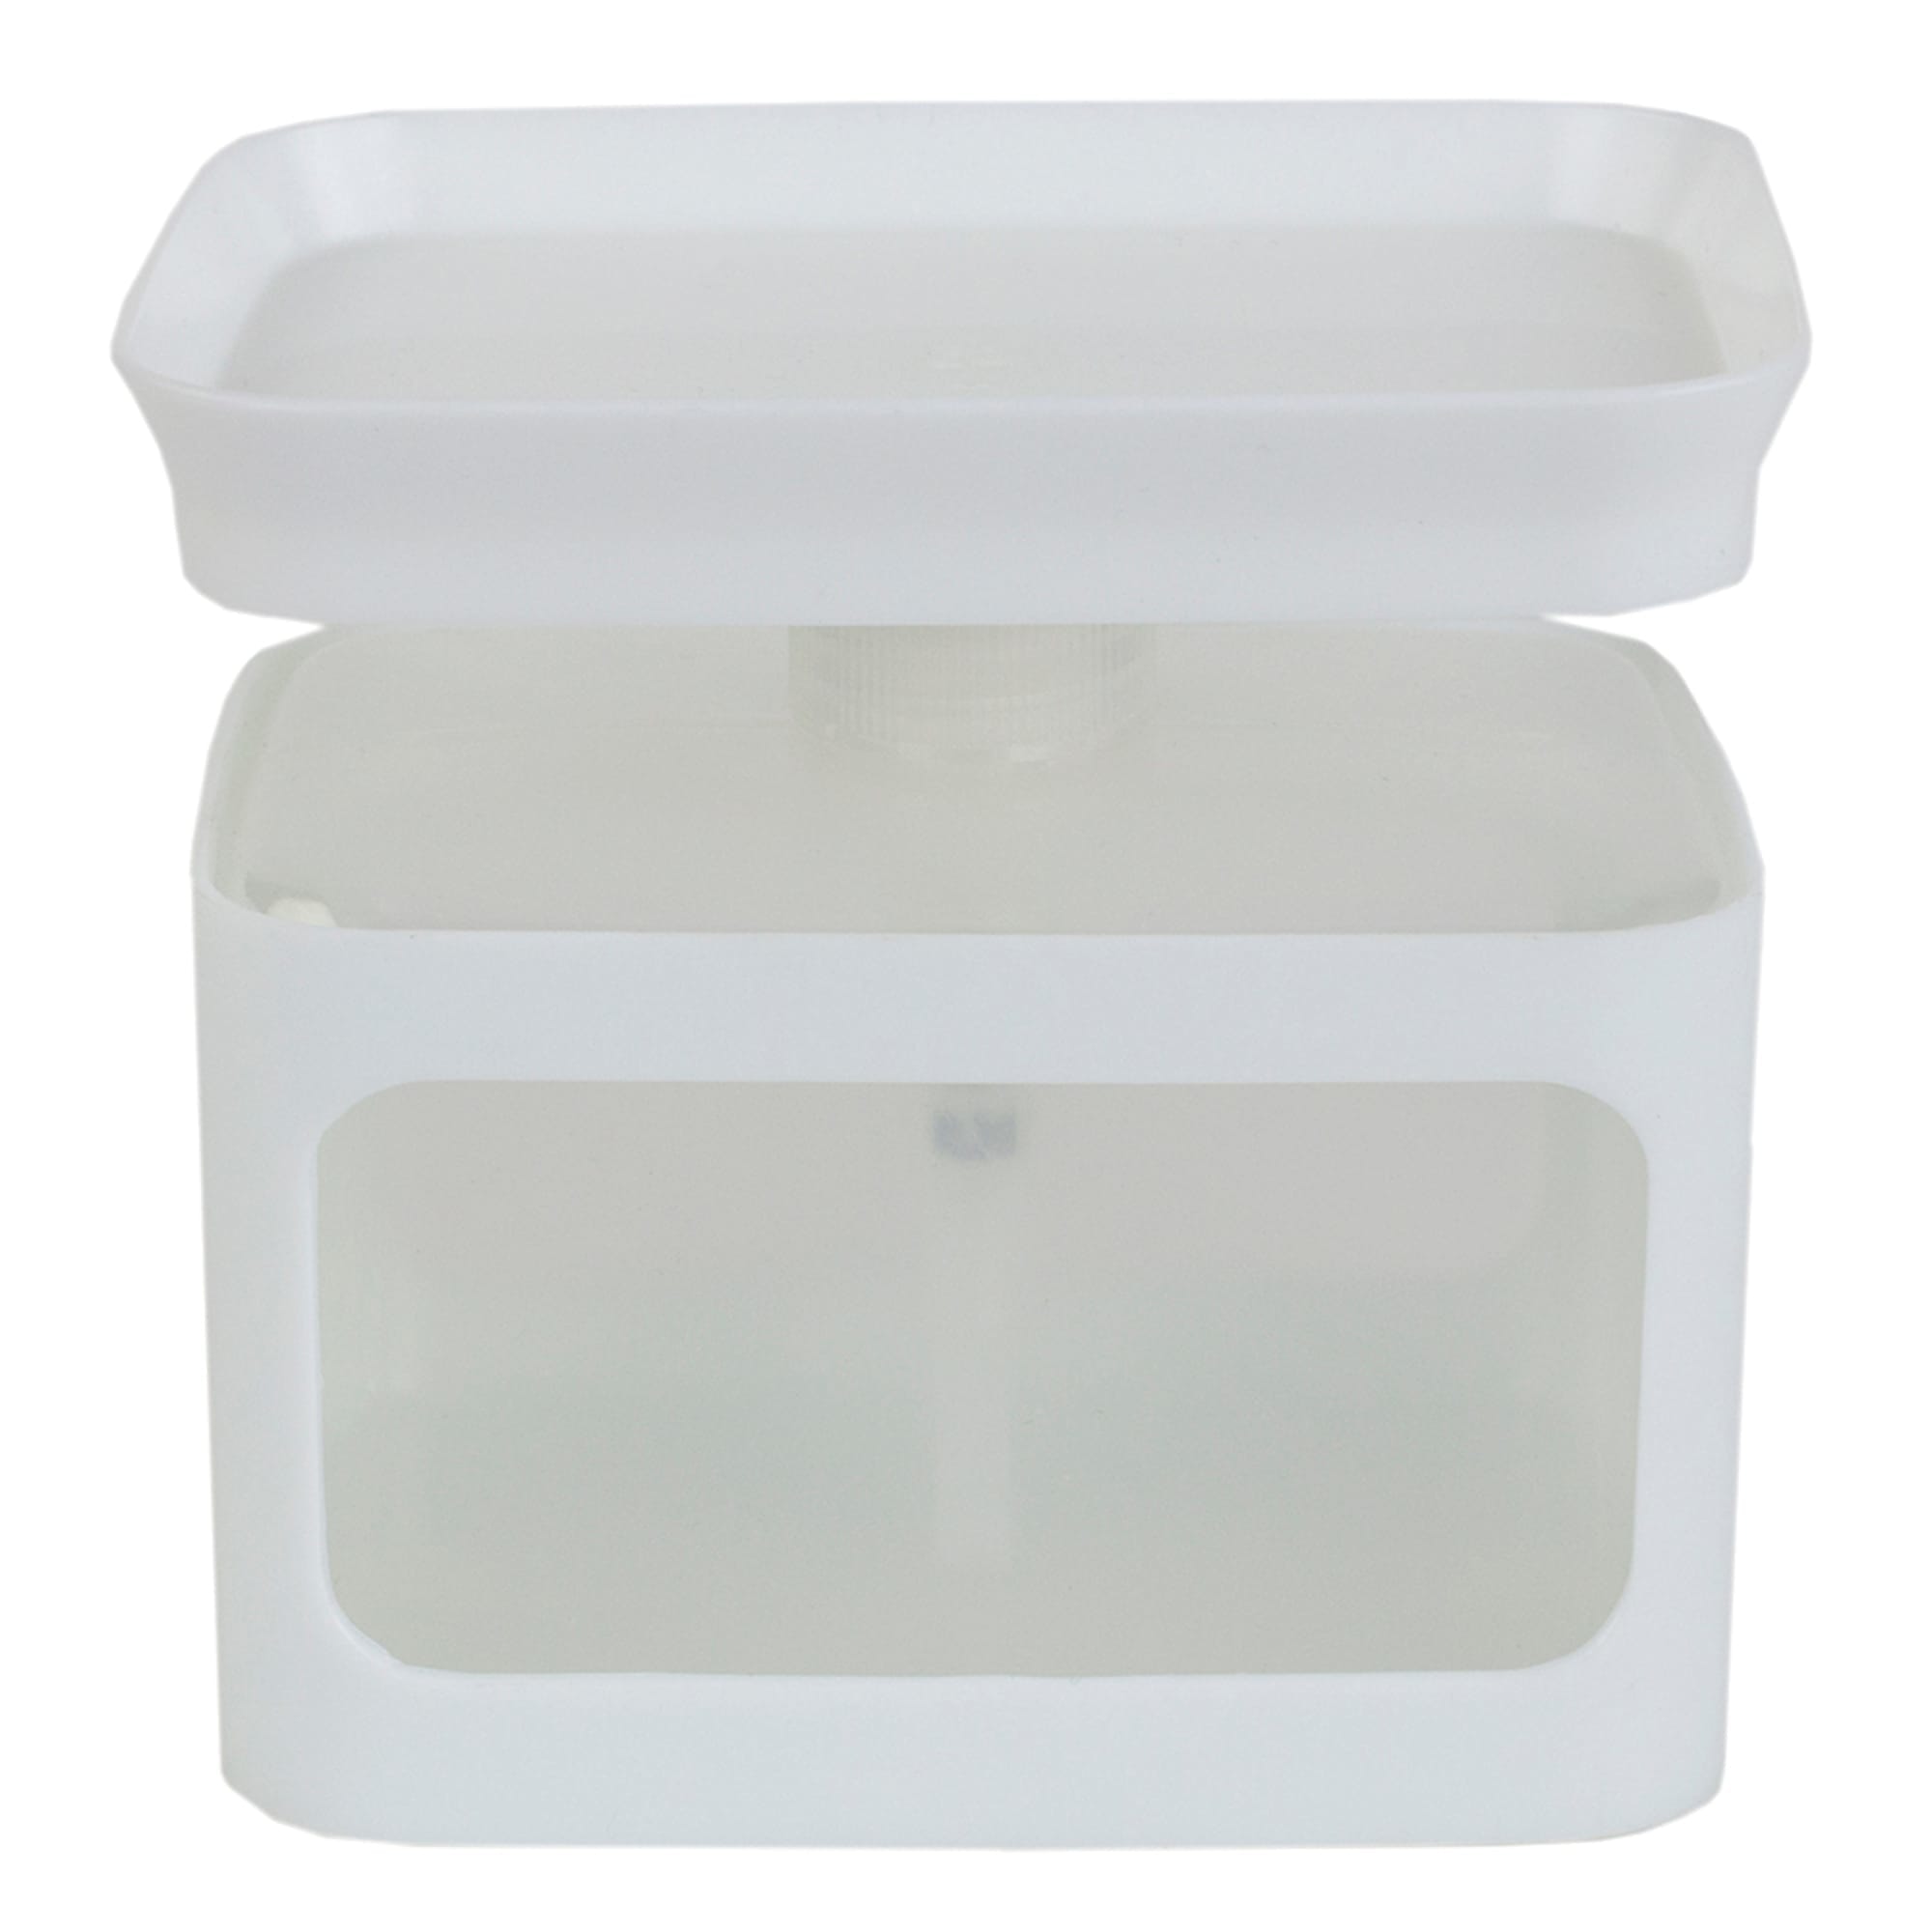 Home Basics Soap Dispensing Sponge Holder, White $4.00 EACH, CASE PACK OF 24